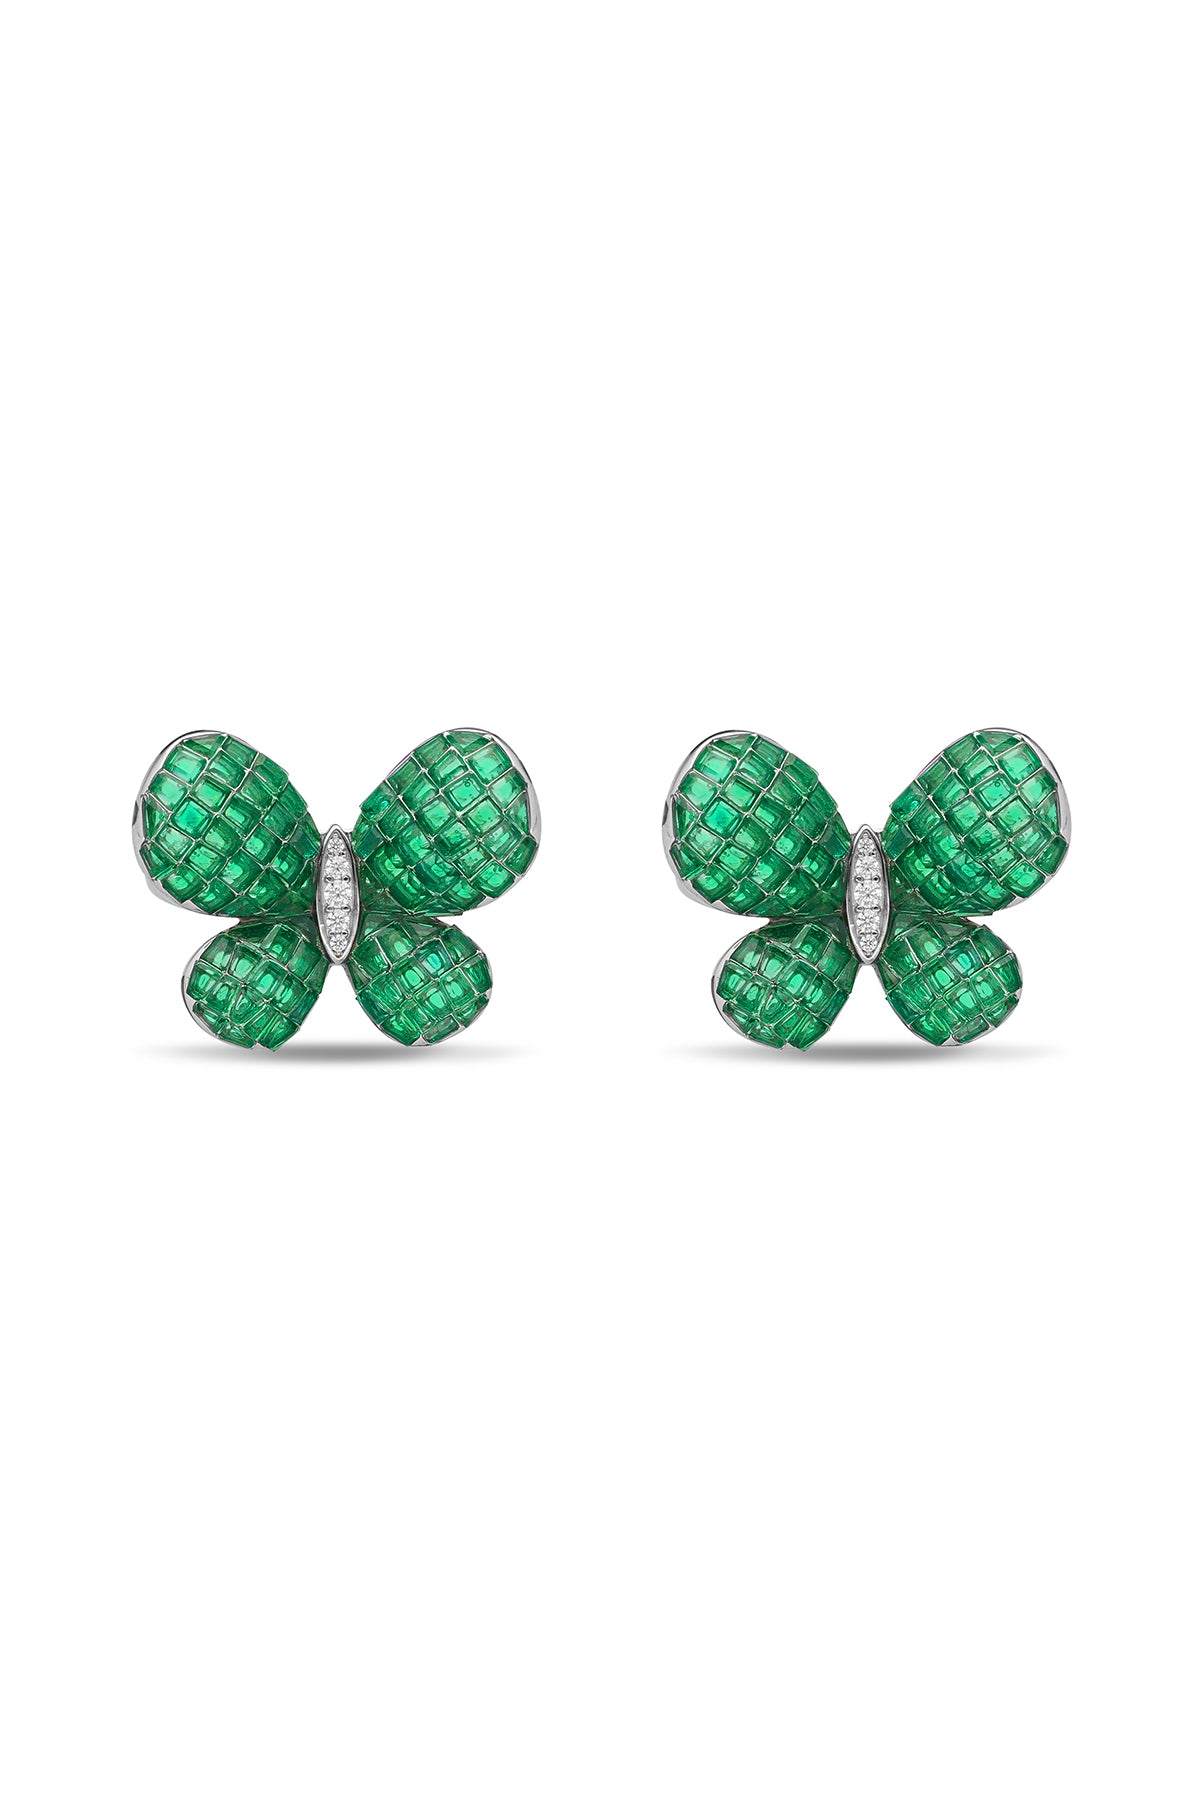 Fluttering Wings Emerald Green Earrings